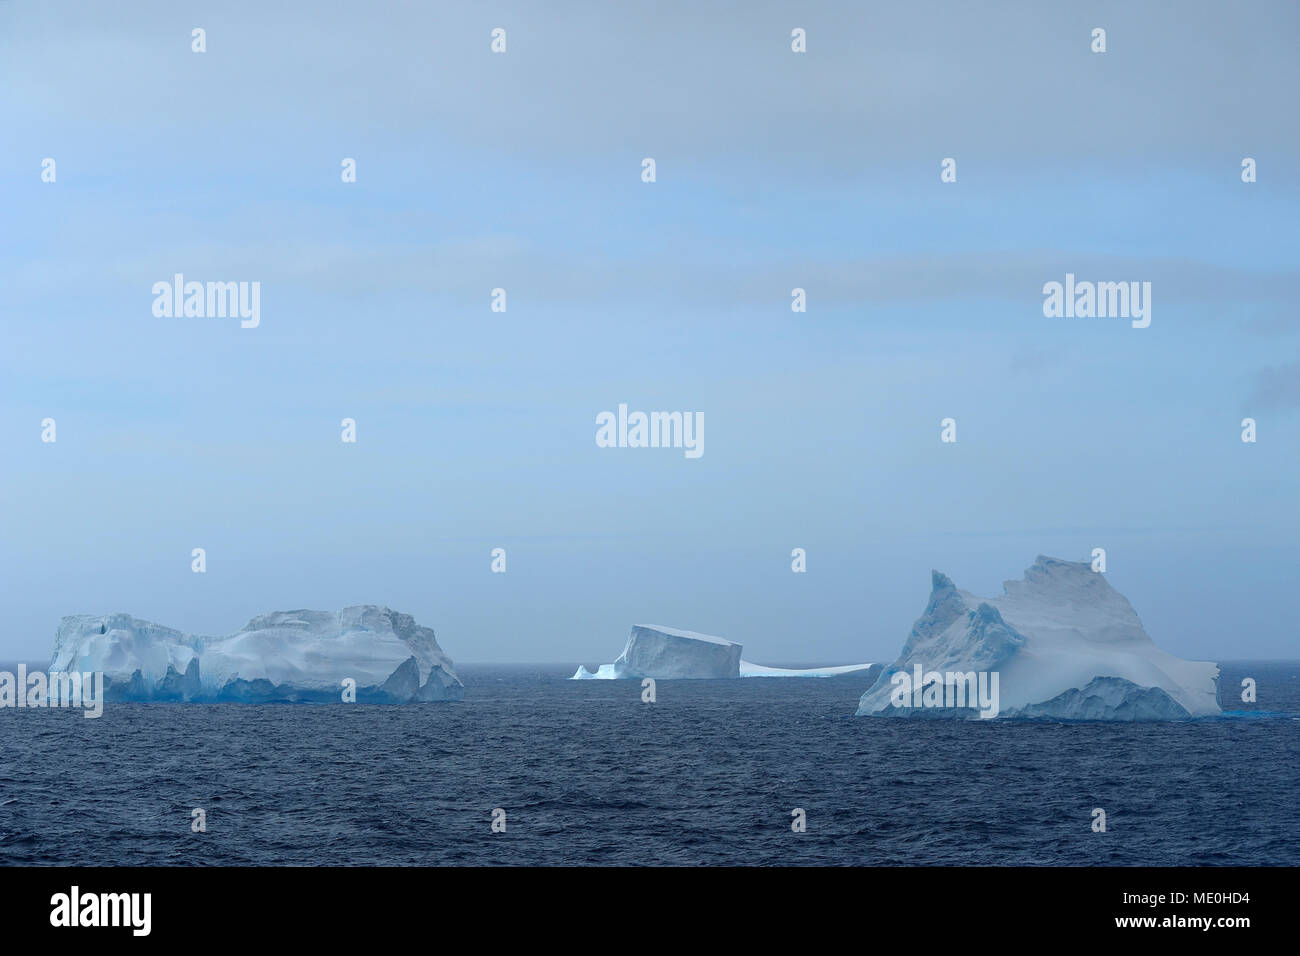 Les icebergs flottant dans l'Antarctique du son sur l'image à la péninsule Antarctique, l'Antarctique Banque D'Images